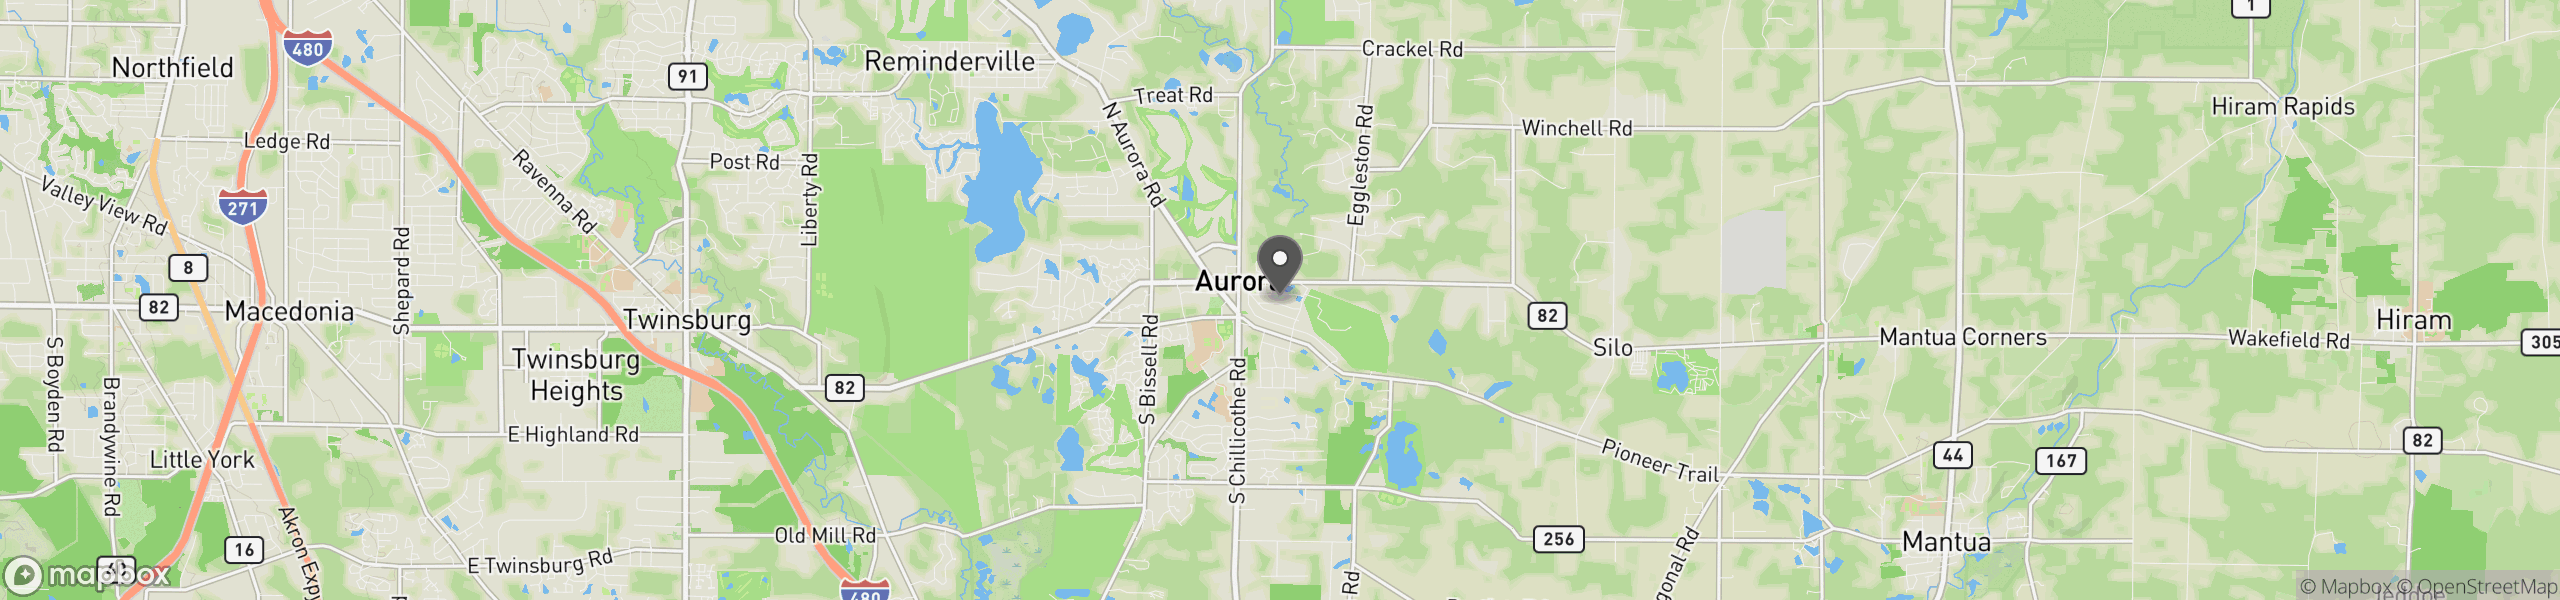 Aurora, OH